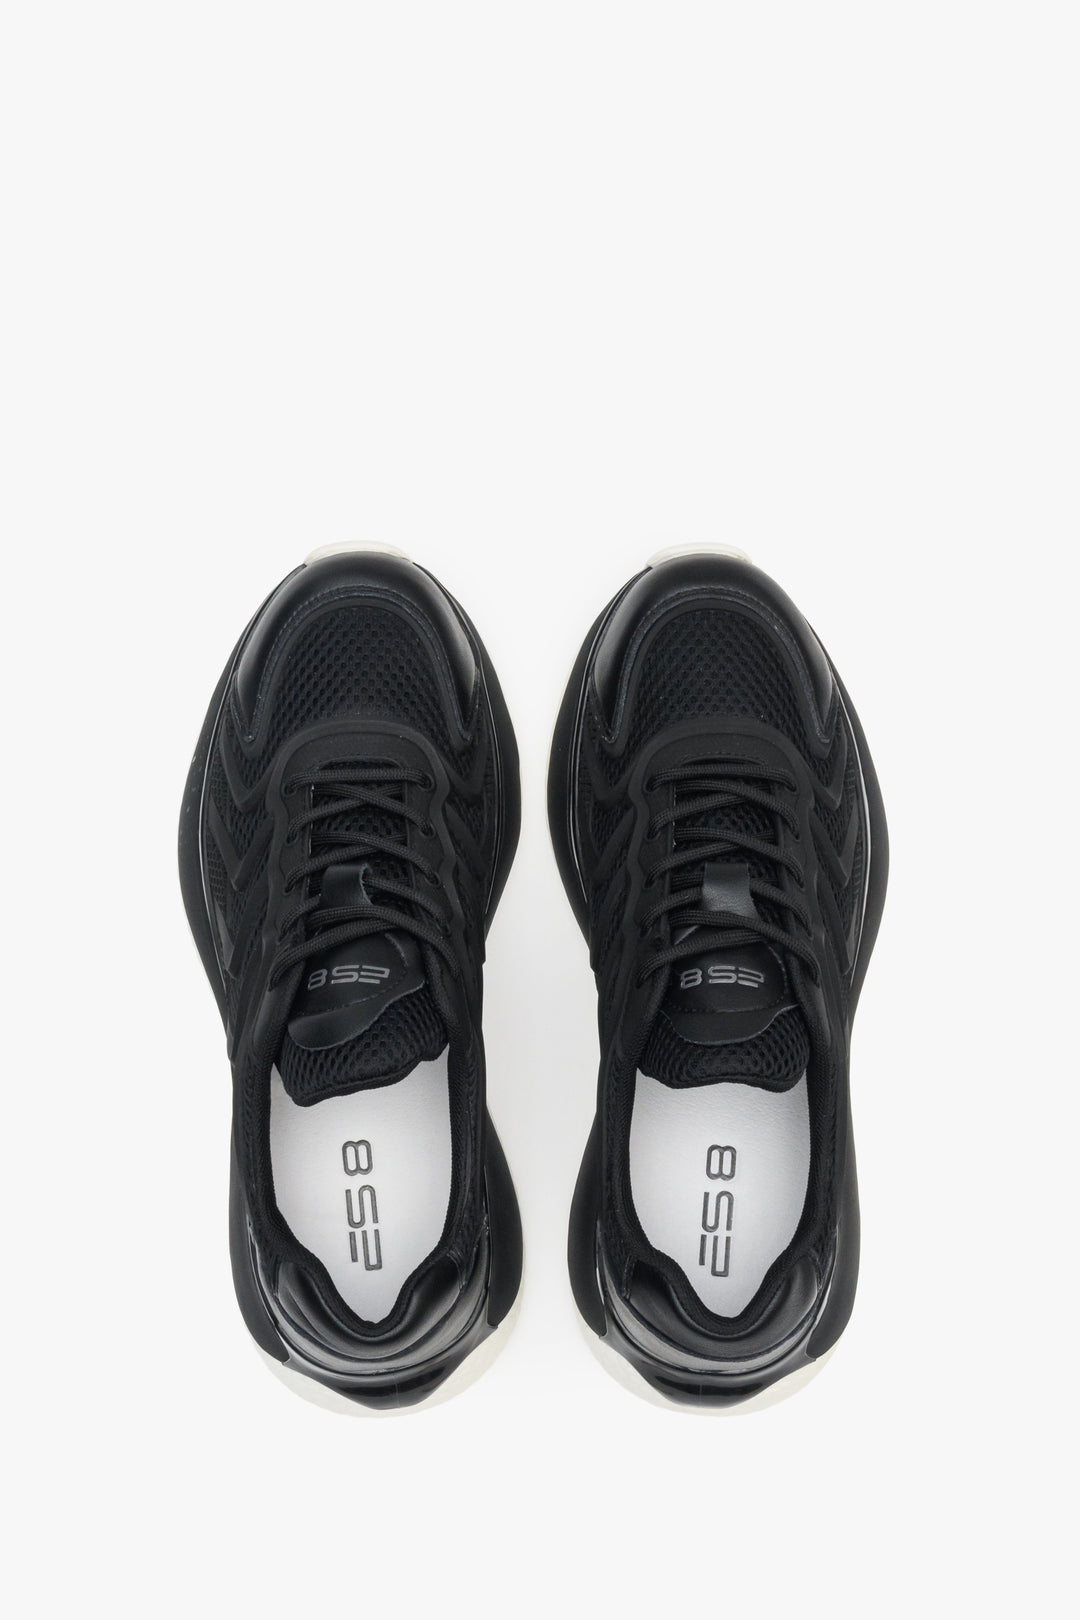 Sneakersy damskie z siateczką w kolorze czarnym,  wielosezonowe.